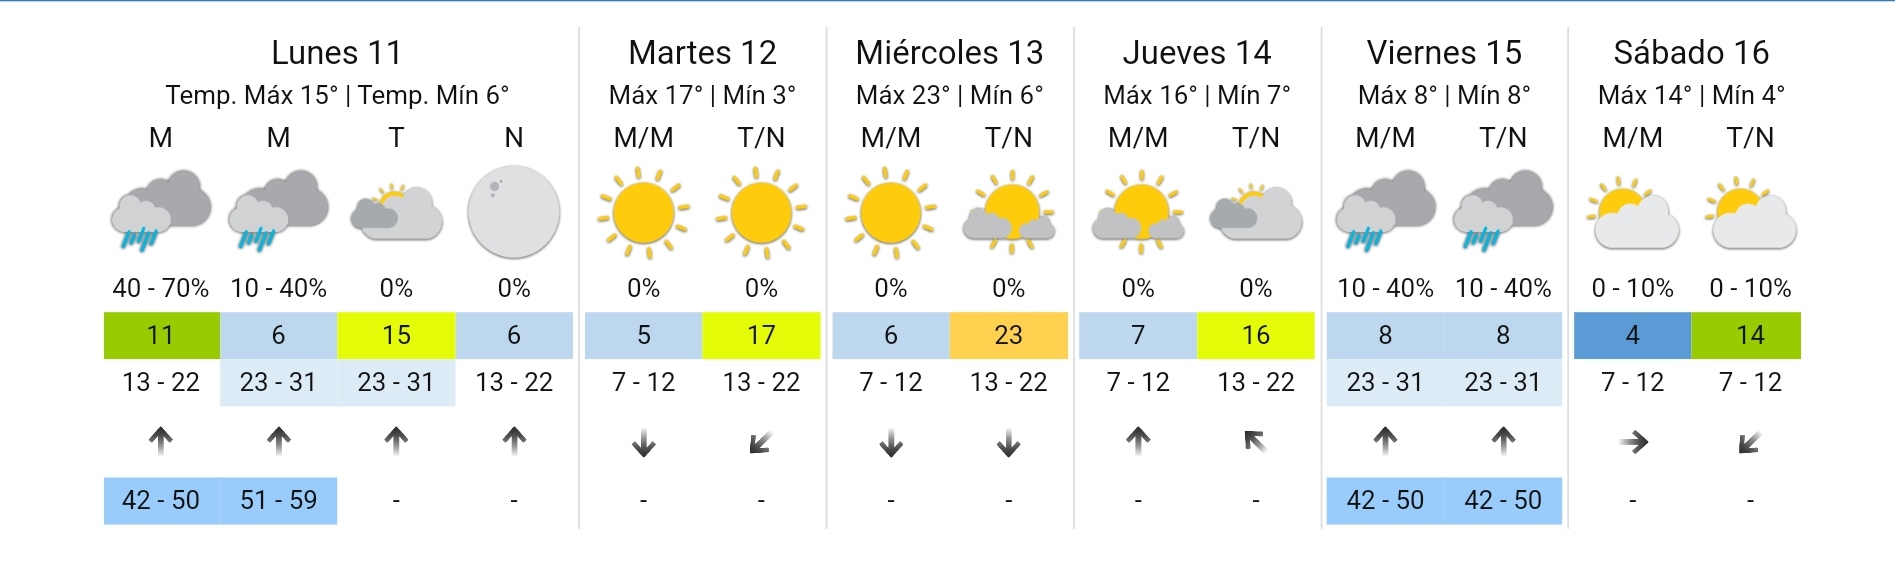 Clima en Córdoba: cómo nos preparamos para hoy y el resto de la semana • Canal C